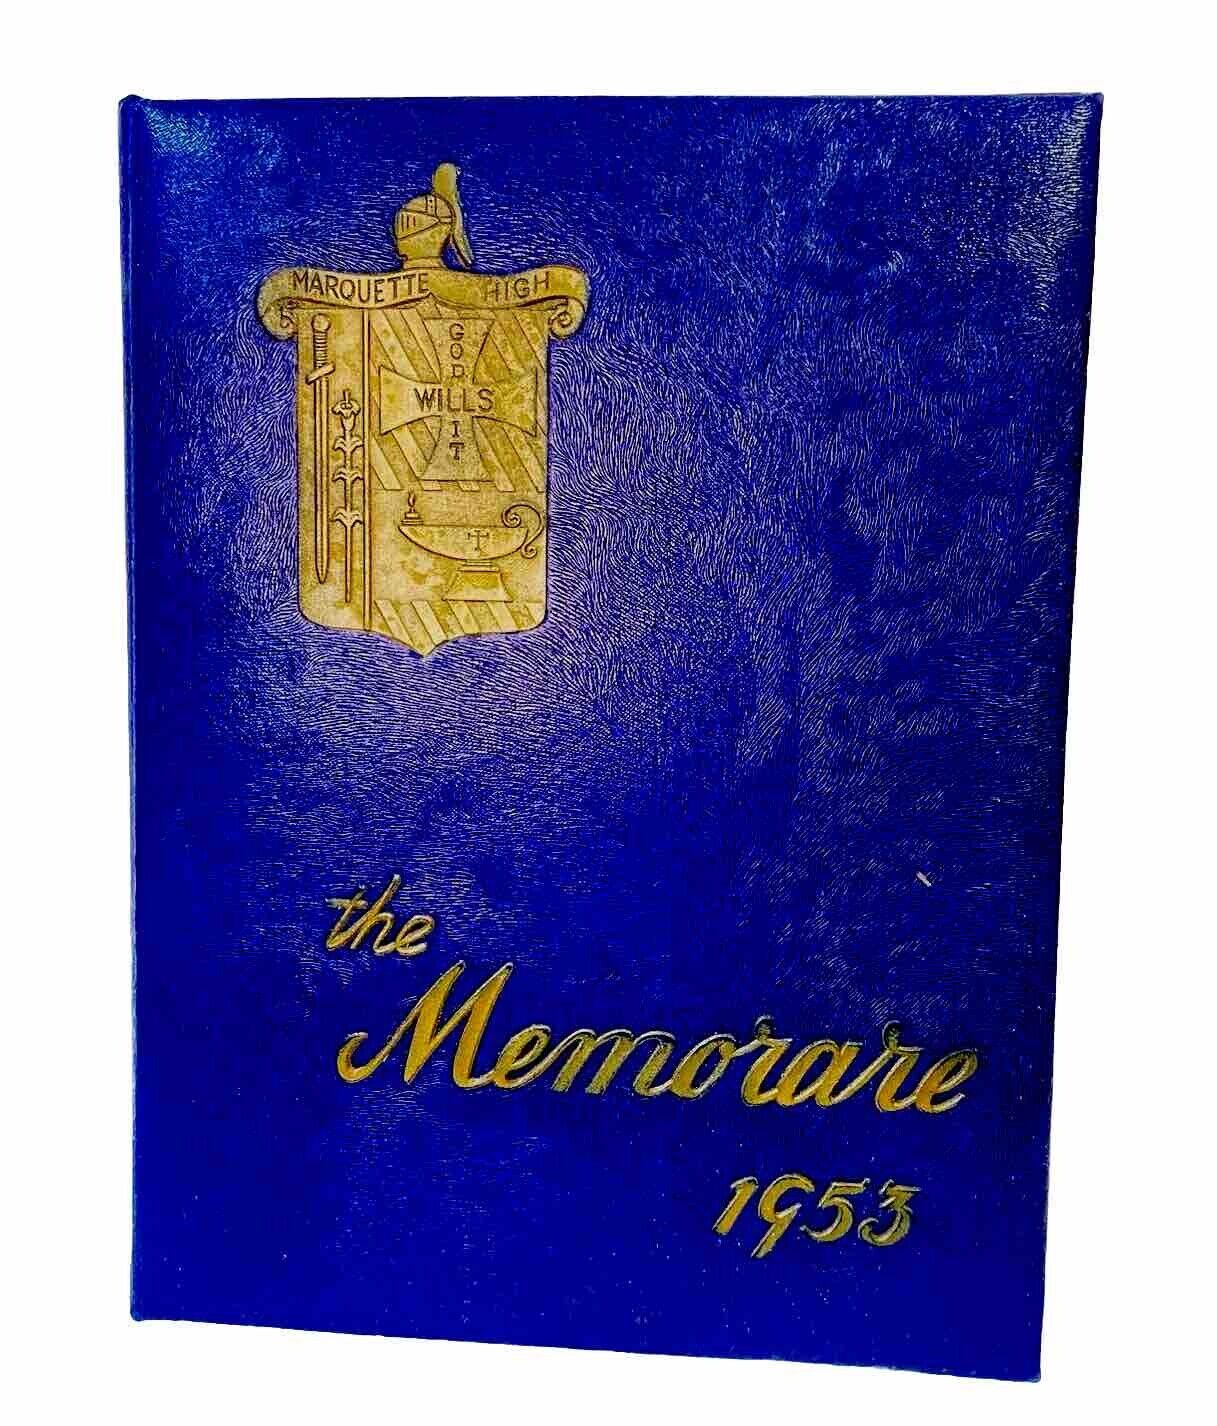 Vintage 1953 Catholic Marquette High School Yearbook Peoria Illinois Memorare